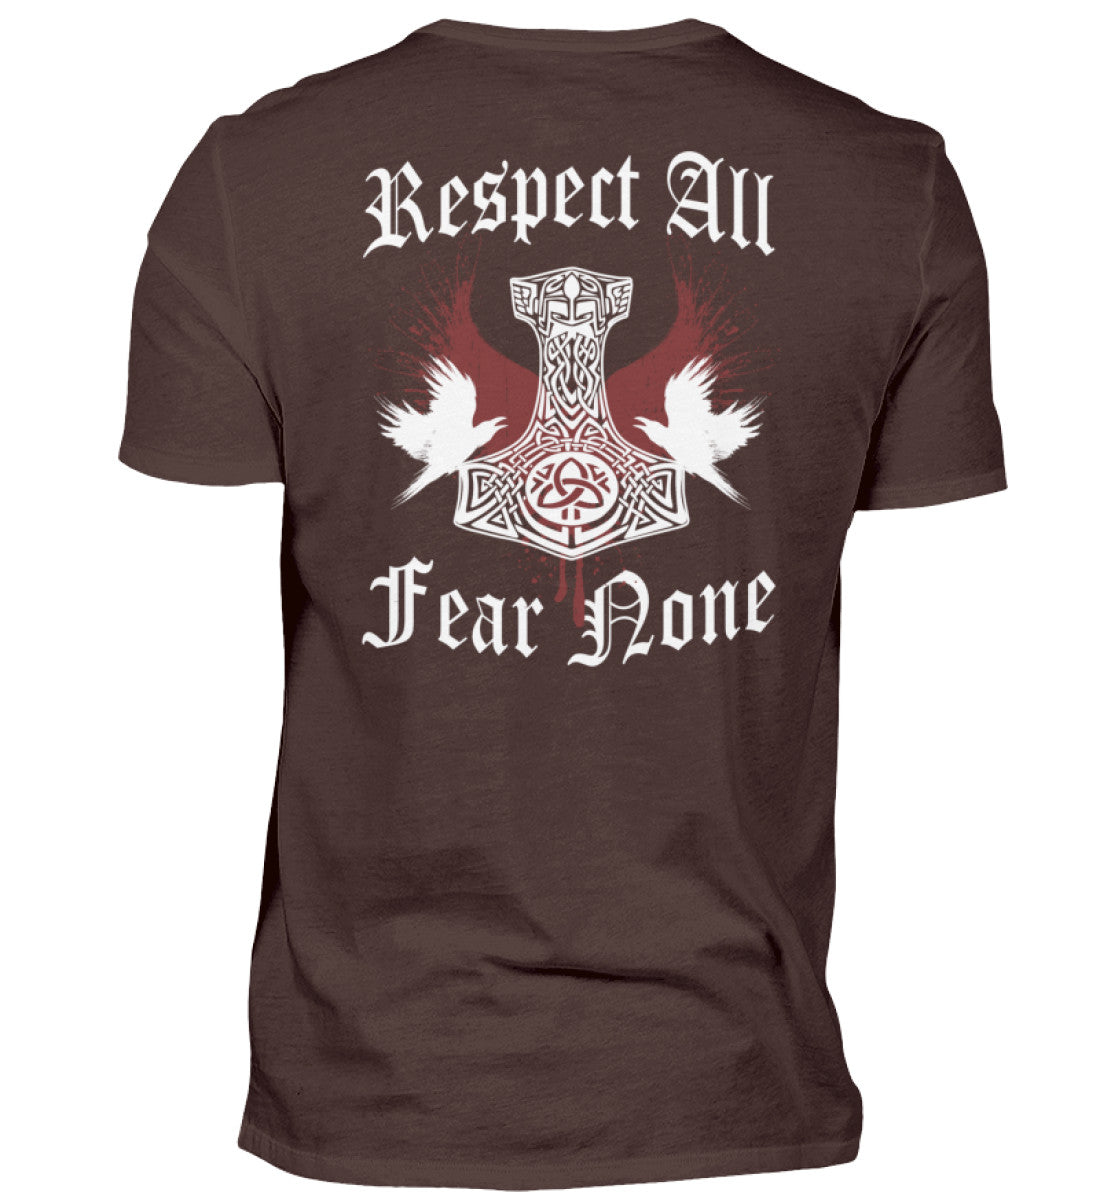 Ein T-Shirt für Motorradfahrer von Wingbikers mit dem Aufdruck, Respekt All - Fear None - mit einem Thorshammer, in braun.